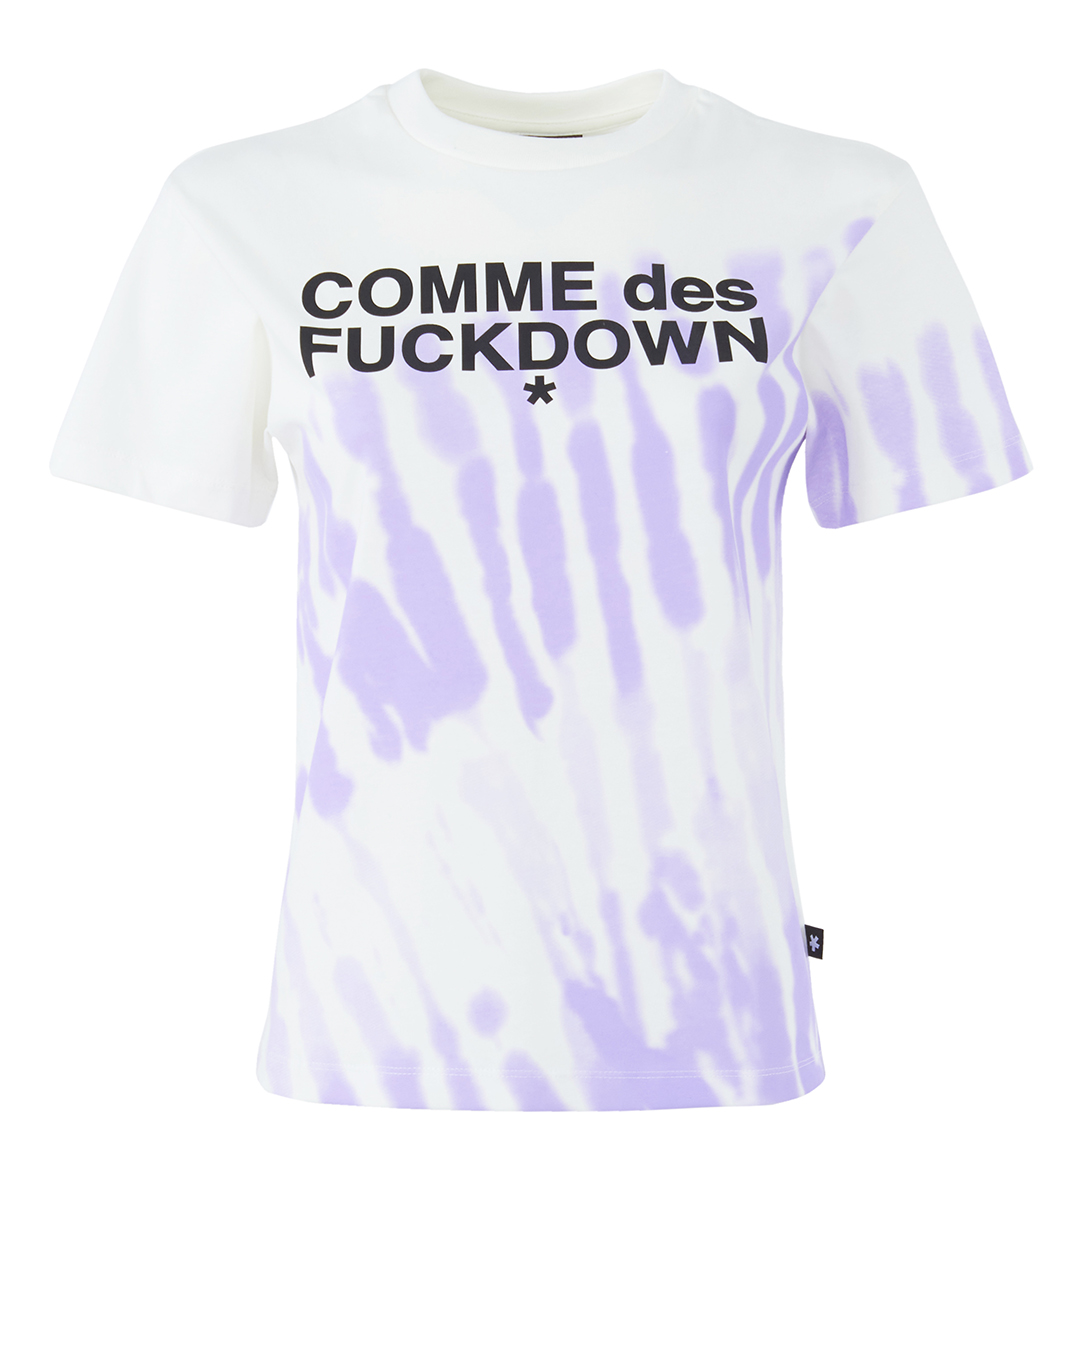 COMME des FUCKDOWN с принтом  артикул CDFD1957 марки COMME des FUCKDOWN купить за 10500 руб.